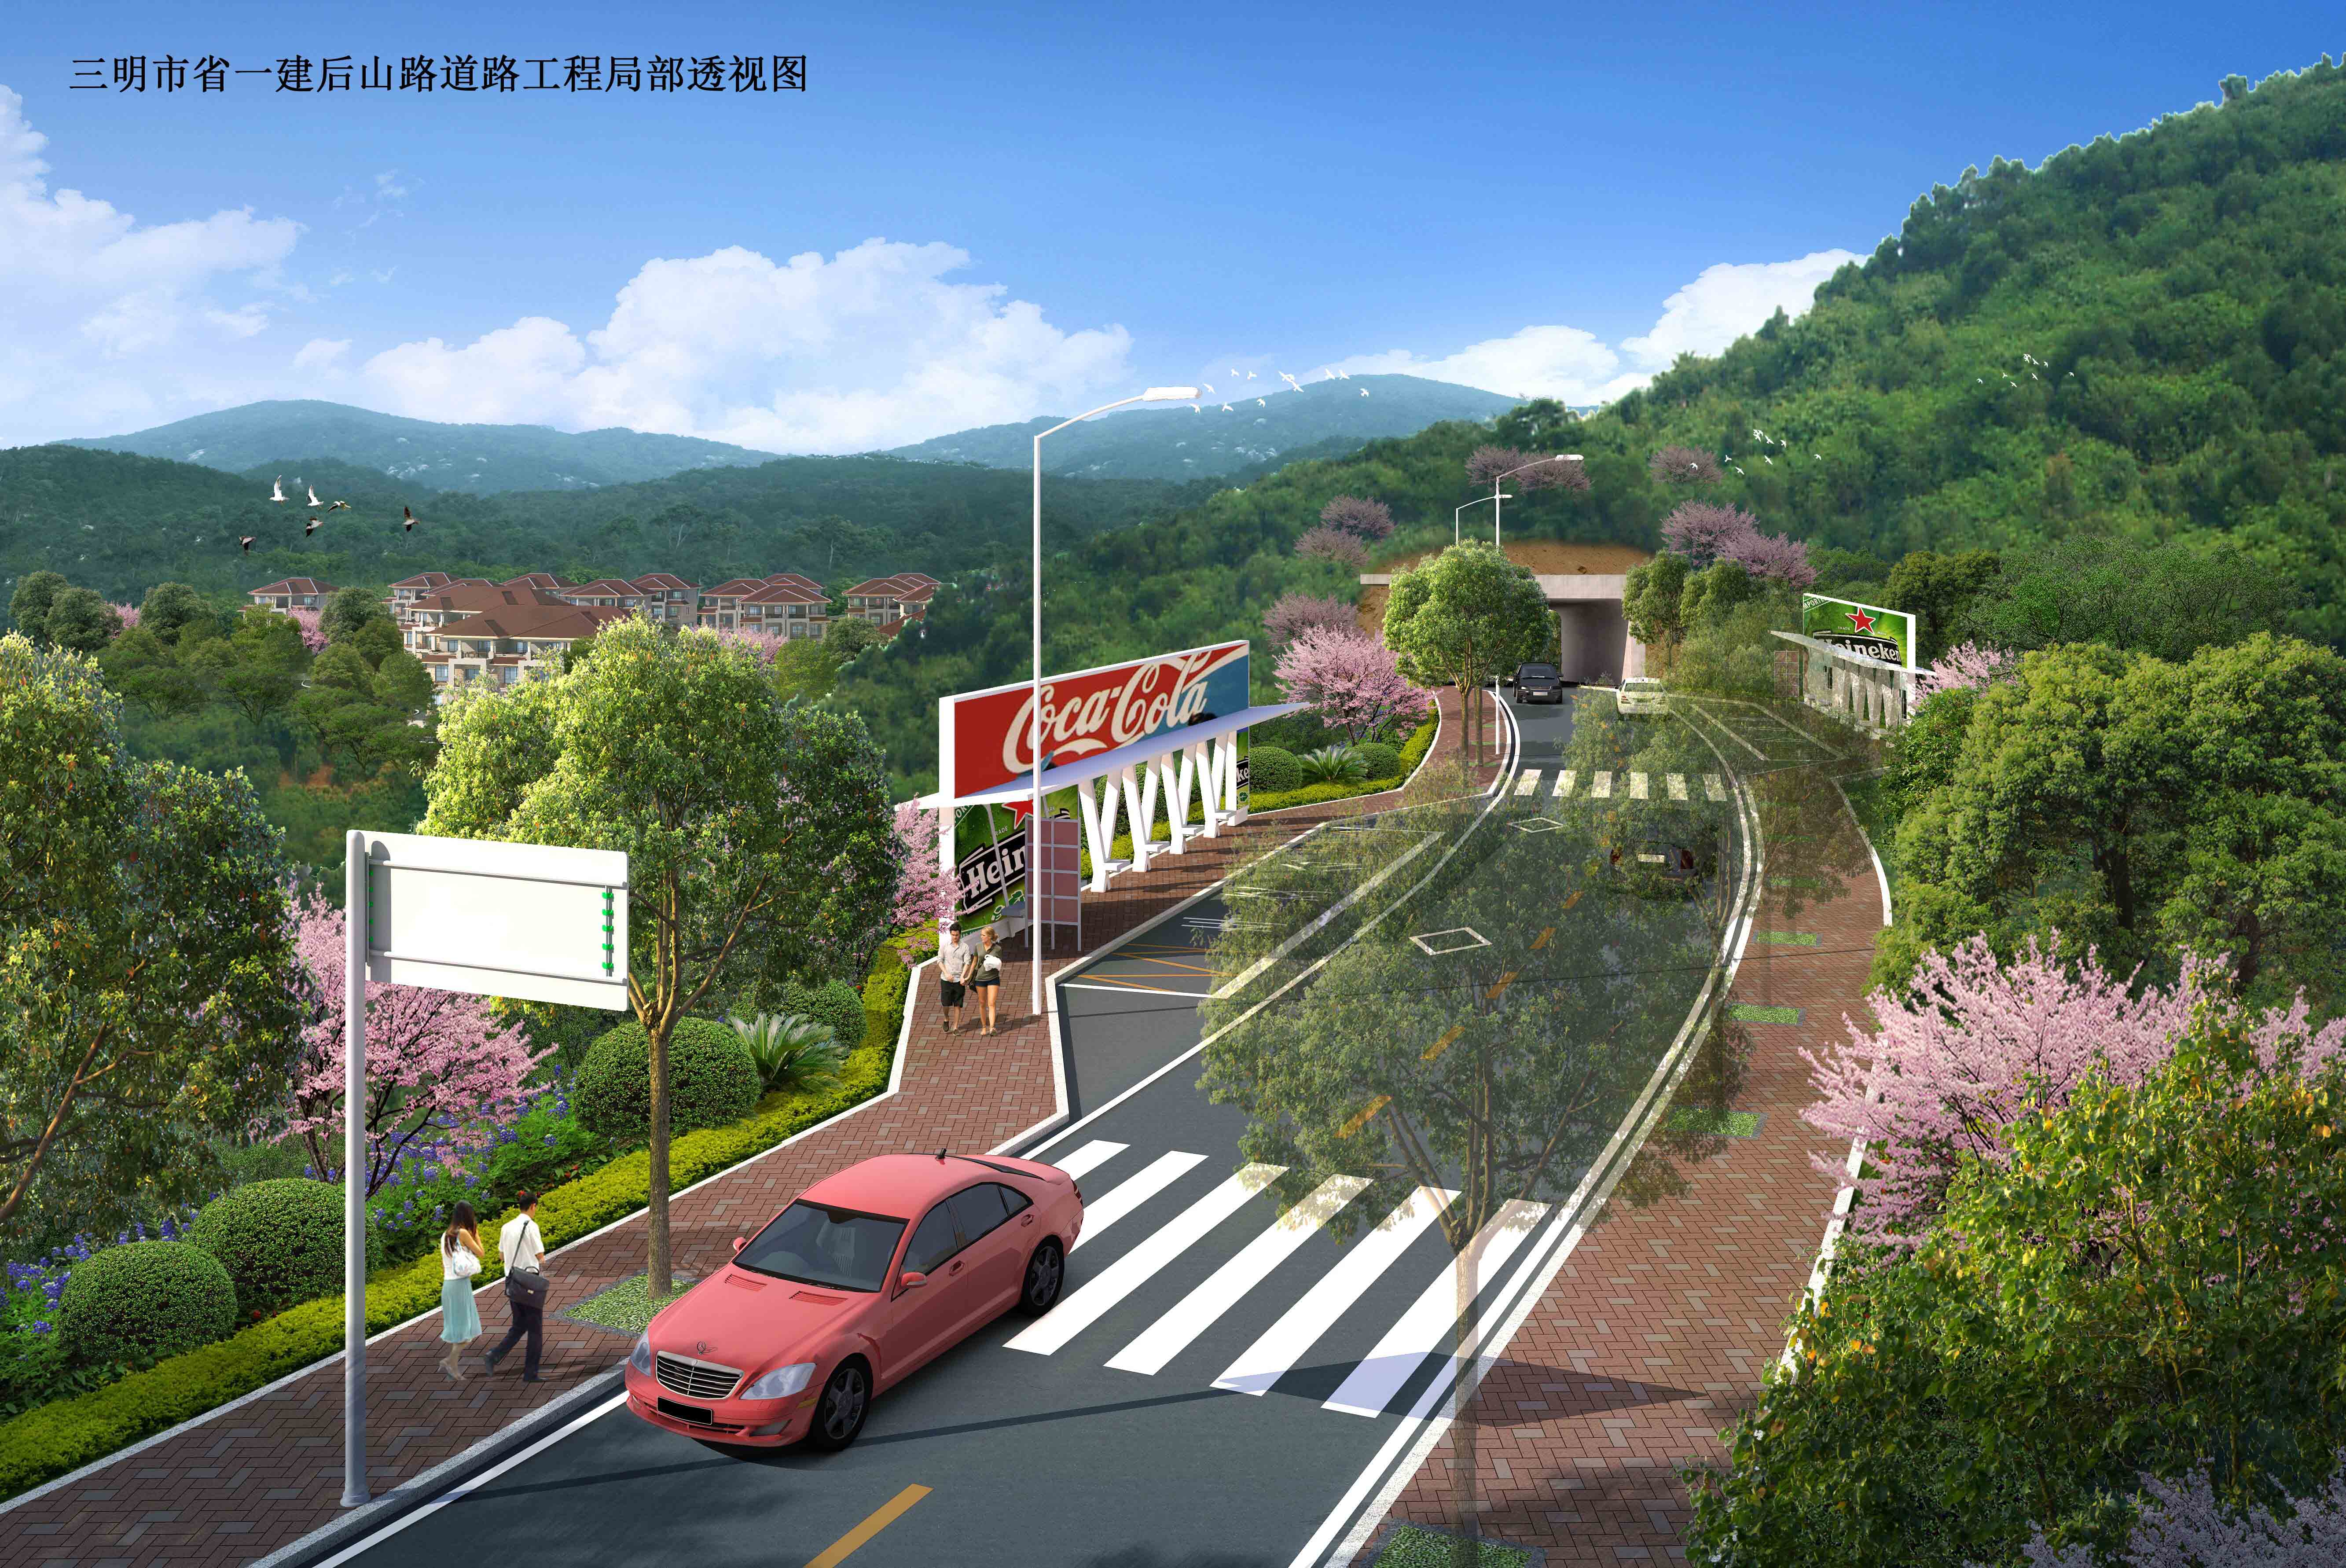 三明市省一建后山路道路工程局部透视图.jpg